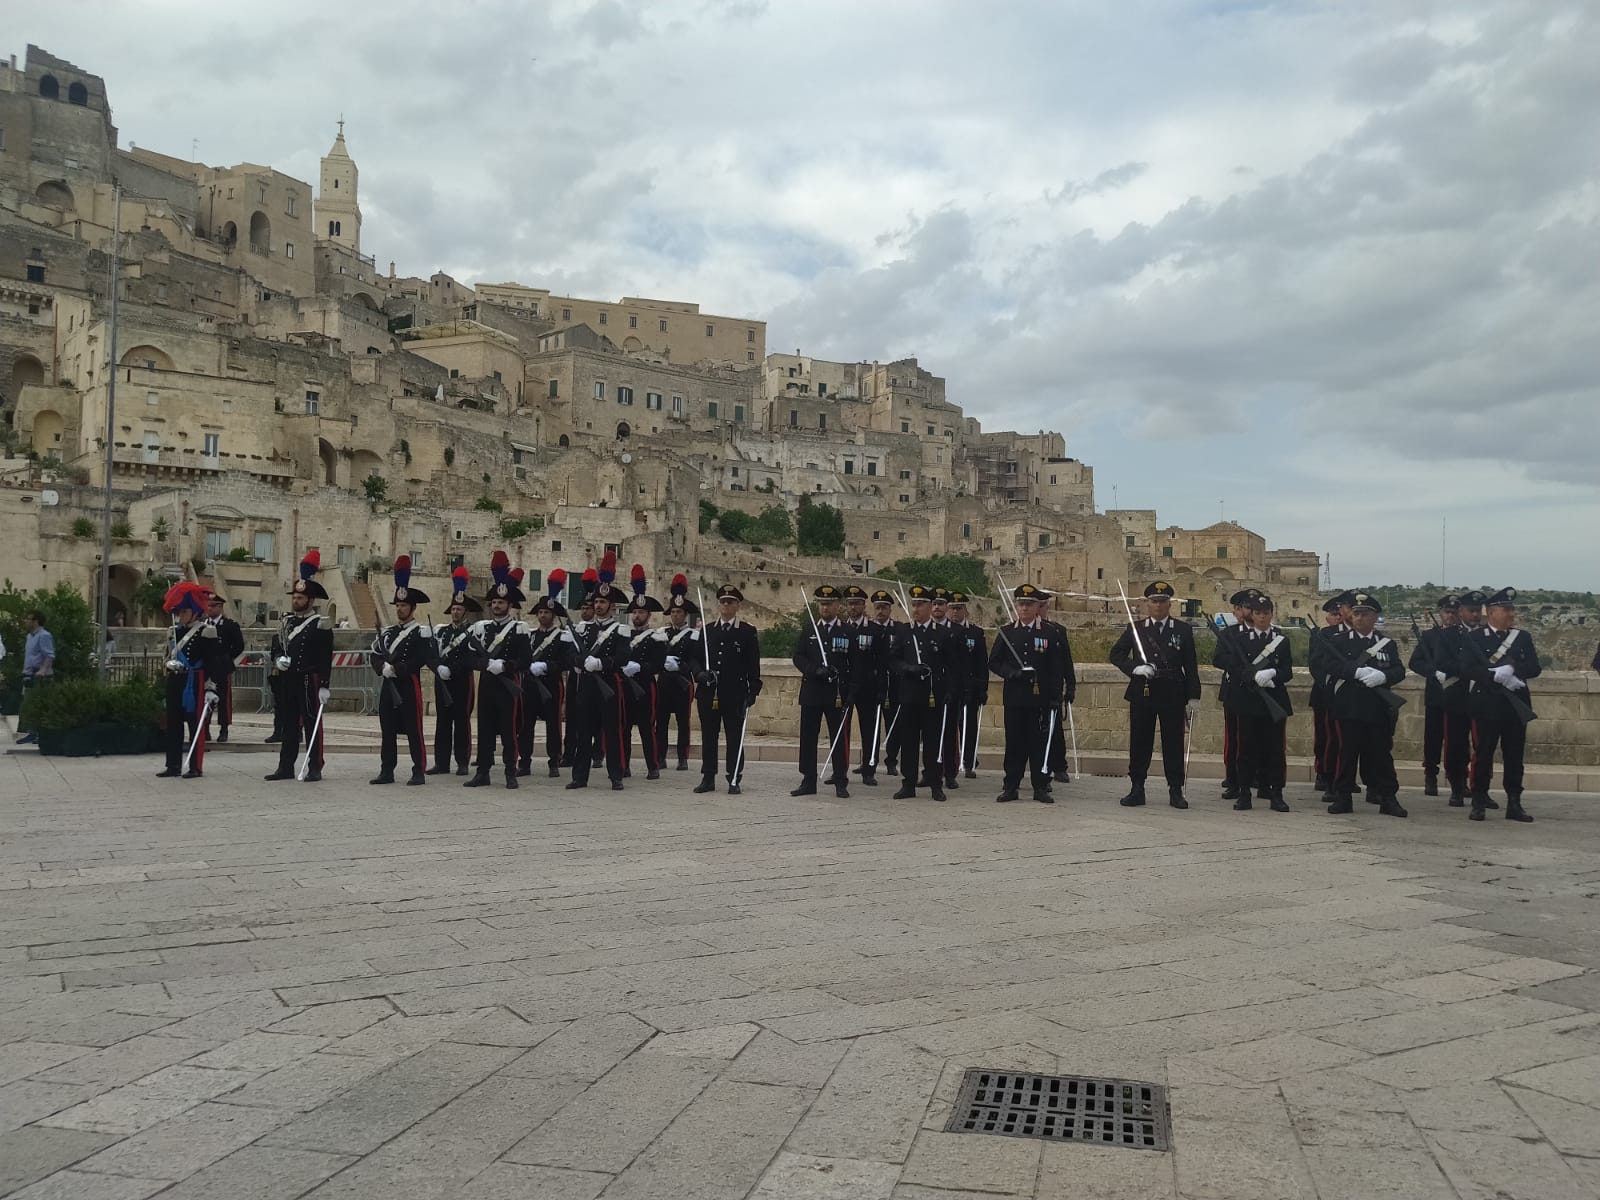 Matera festeggia l’Arma dei Carabinieri:  in piazza San Pietro Caveoso le celebrazioni del 208° Anniversario della Fondazione